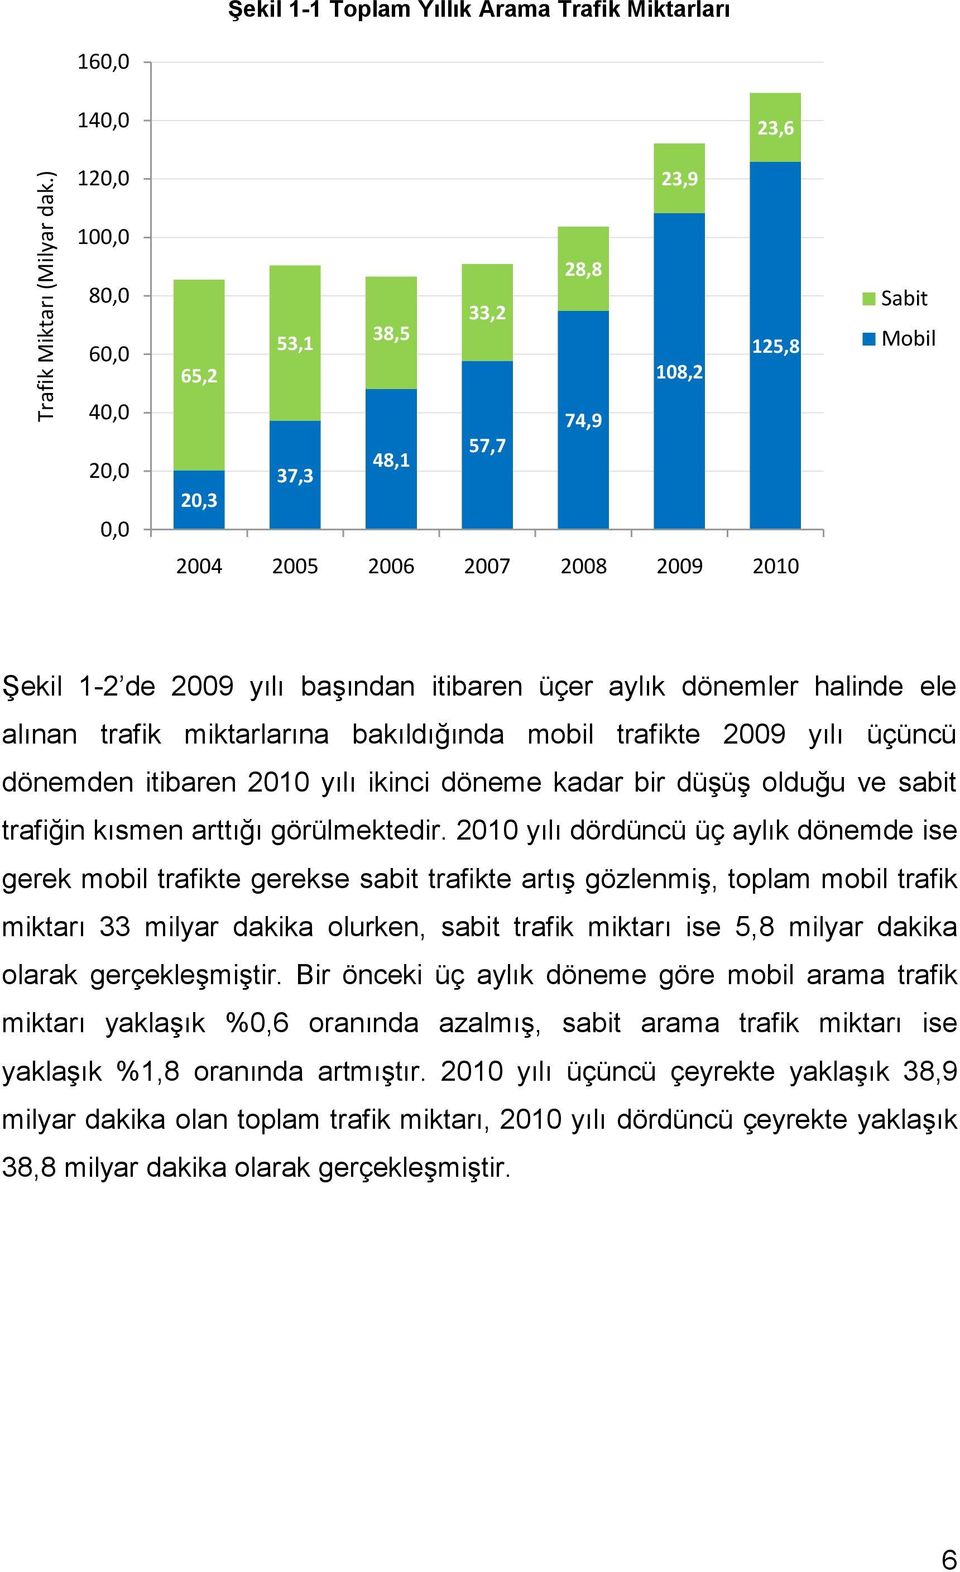 2010 Sabit Mobil Şekil 1-2 de 2009 yılı başından itibaren üçer aylık dönemler halinde ele alınan trafik miktarlarına bakıldığında mobil trafikte 2009 yılı üçüncü dönemden itibaren 2010 yılı ikinci